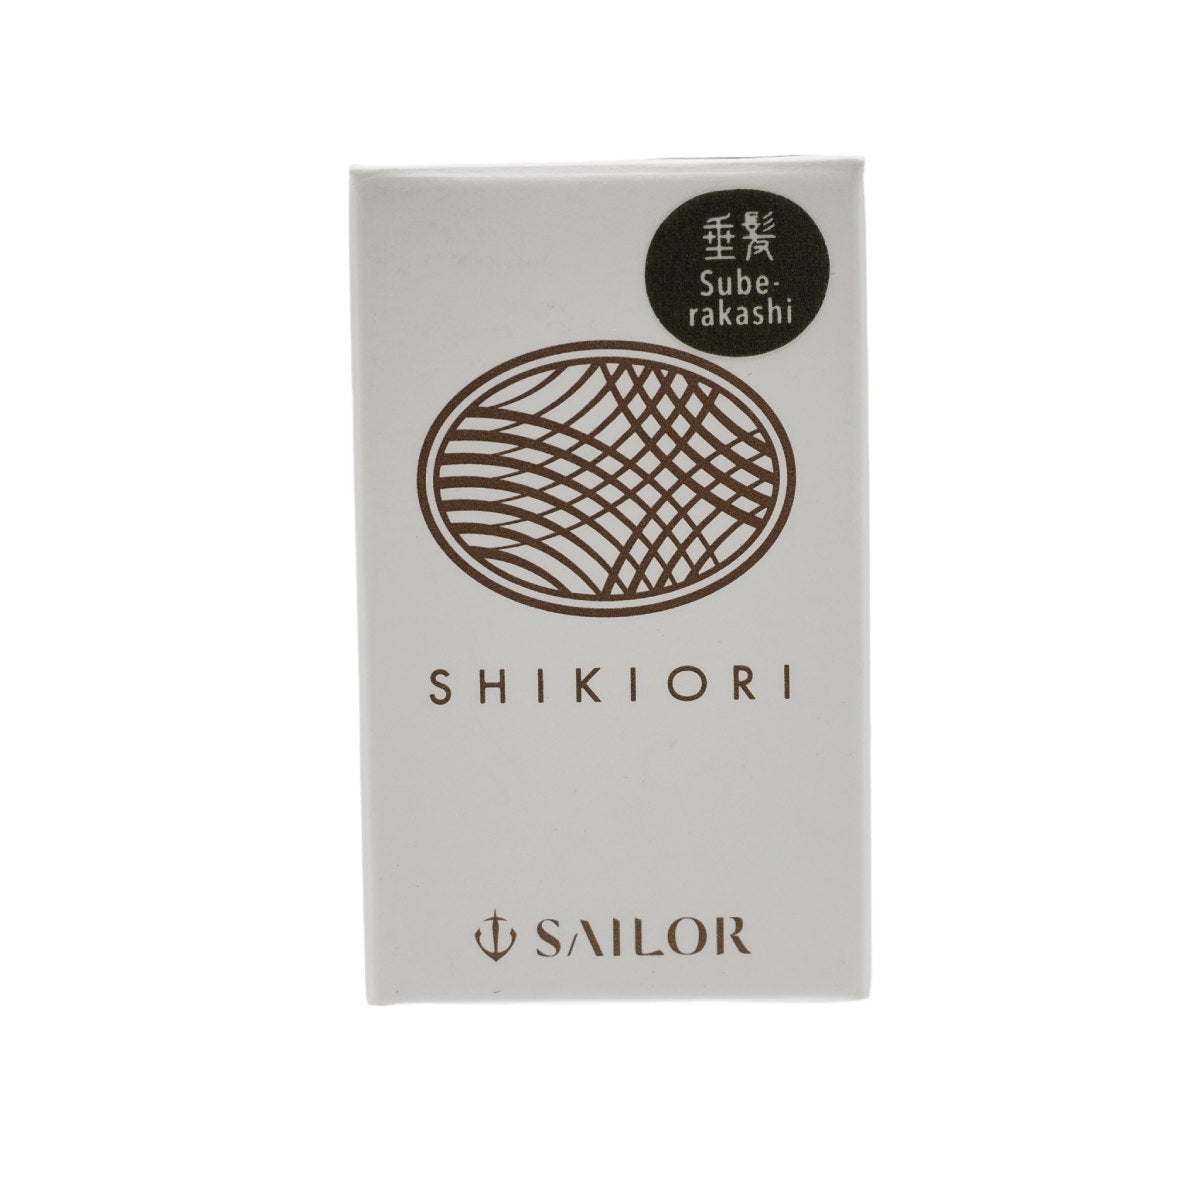 Sailor Shikiori Ink - Suberakashi